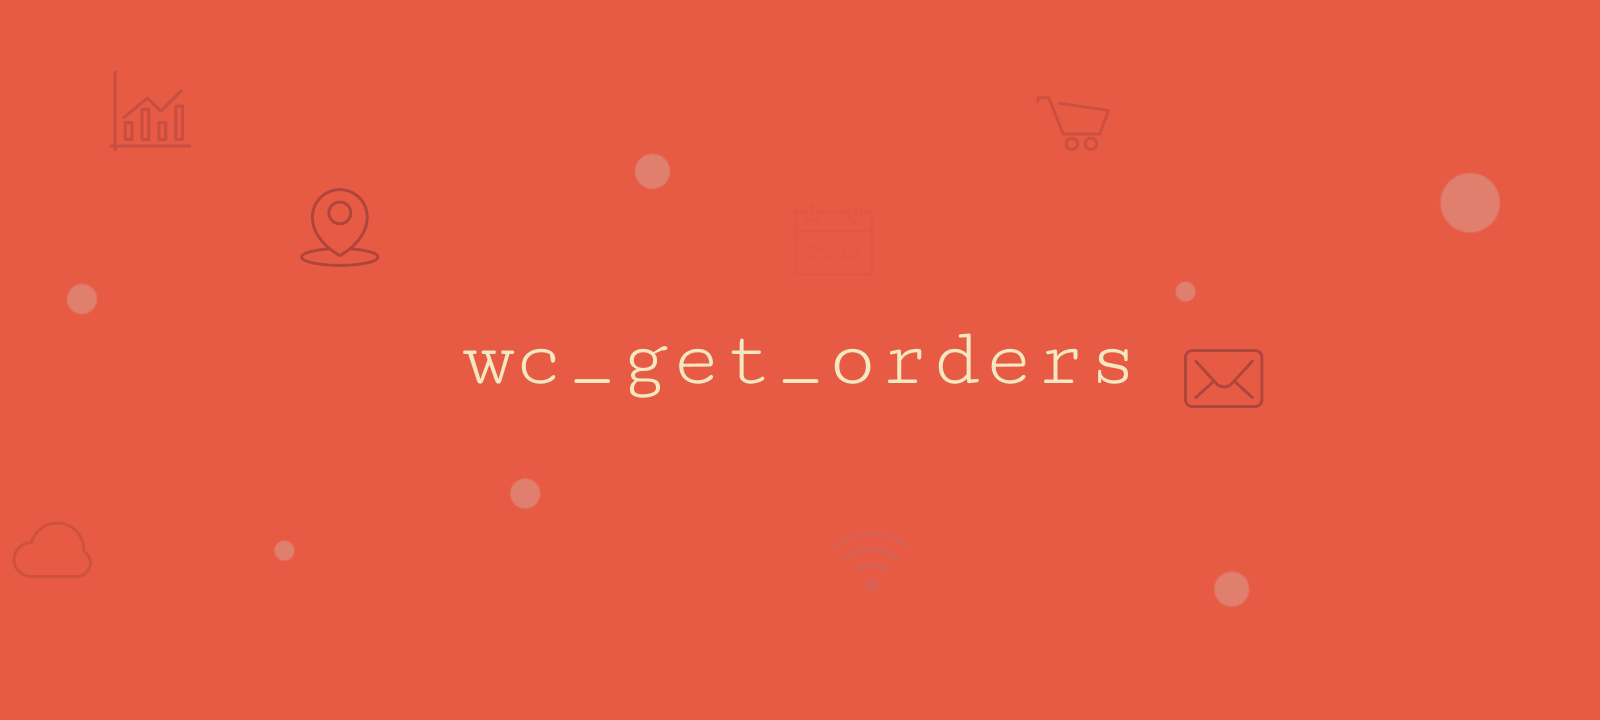 wc-get-orders